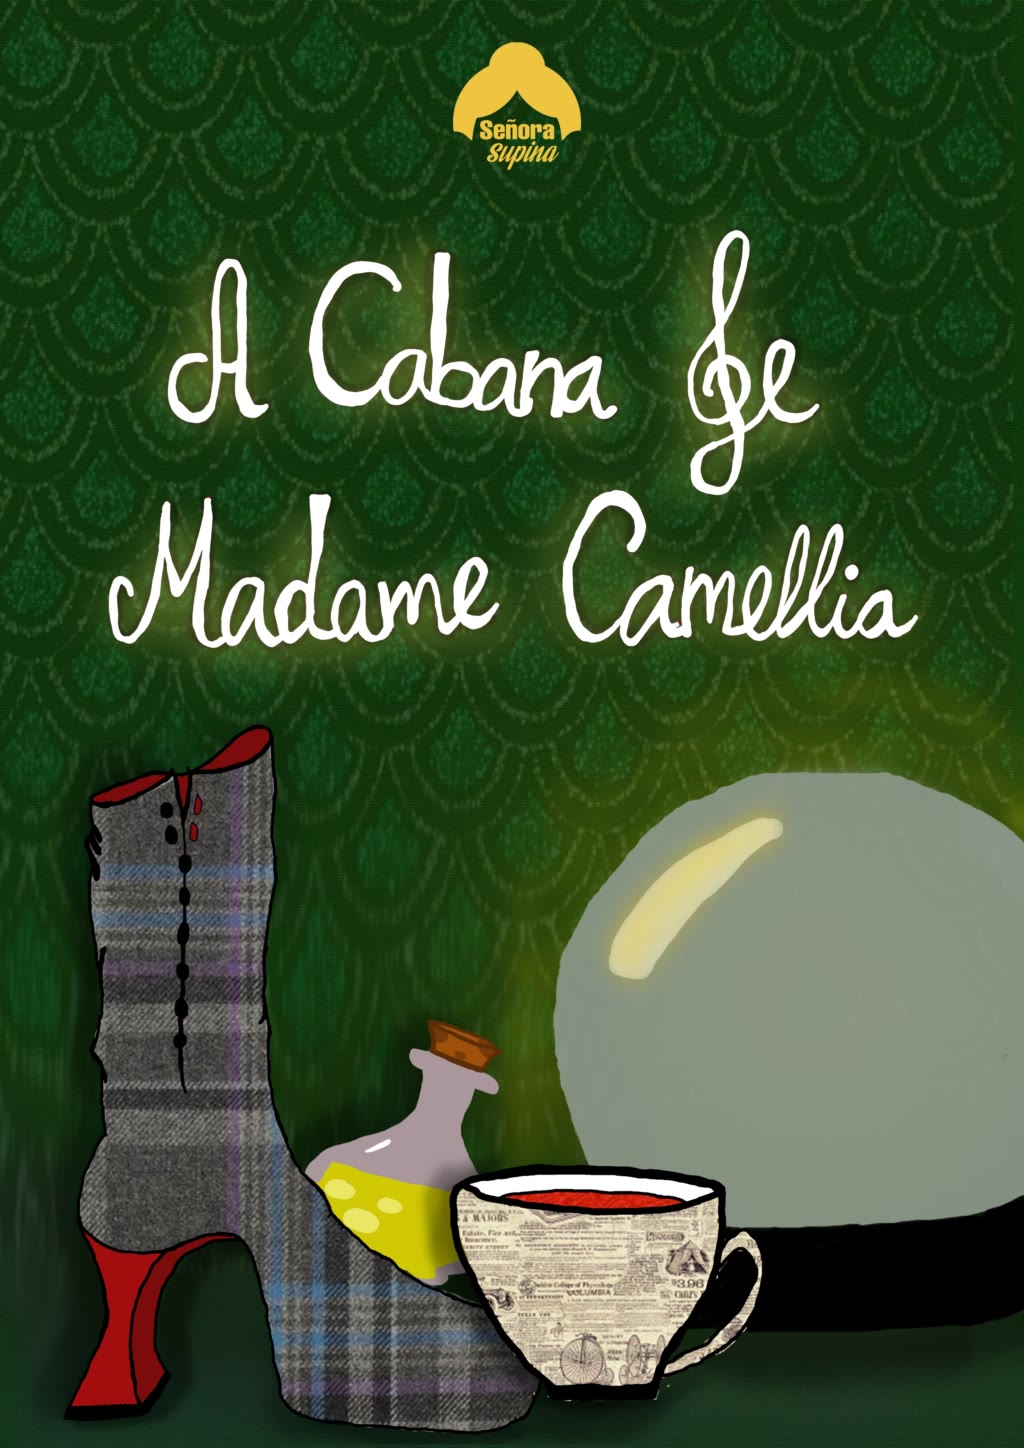 Cartel A cabana de Madame Camellia